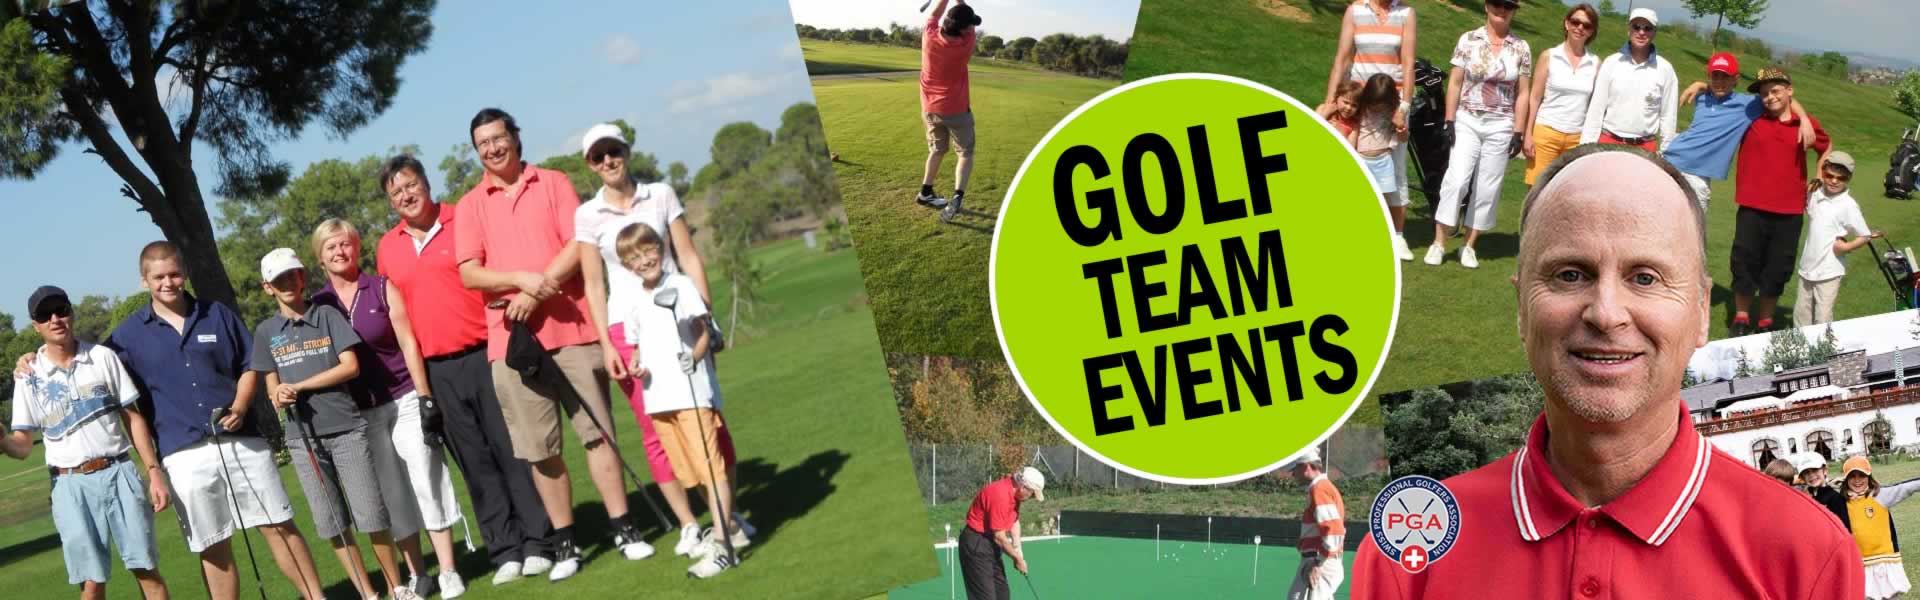 Golf-TEAM-Firmenevents-Golf-Eveents-Pro-Lehrer-Golfstunden-Zuerich-Thierry-Rombaldi-01a